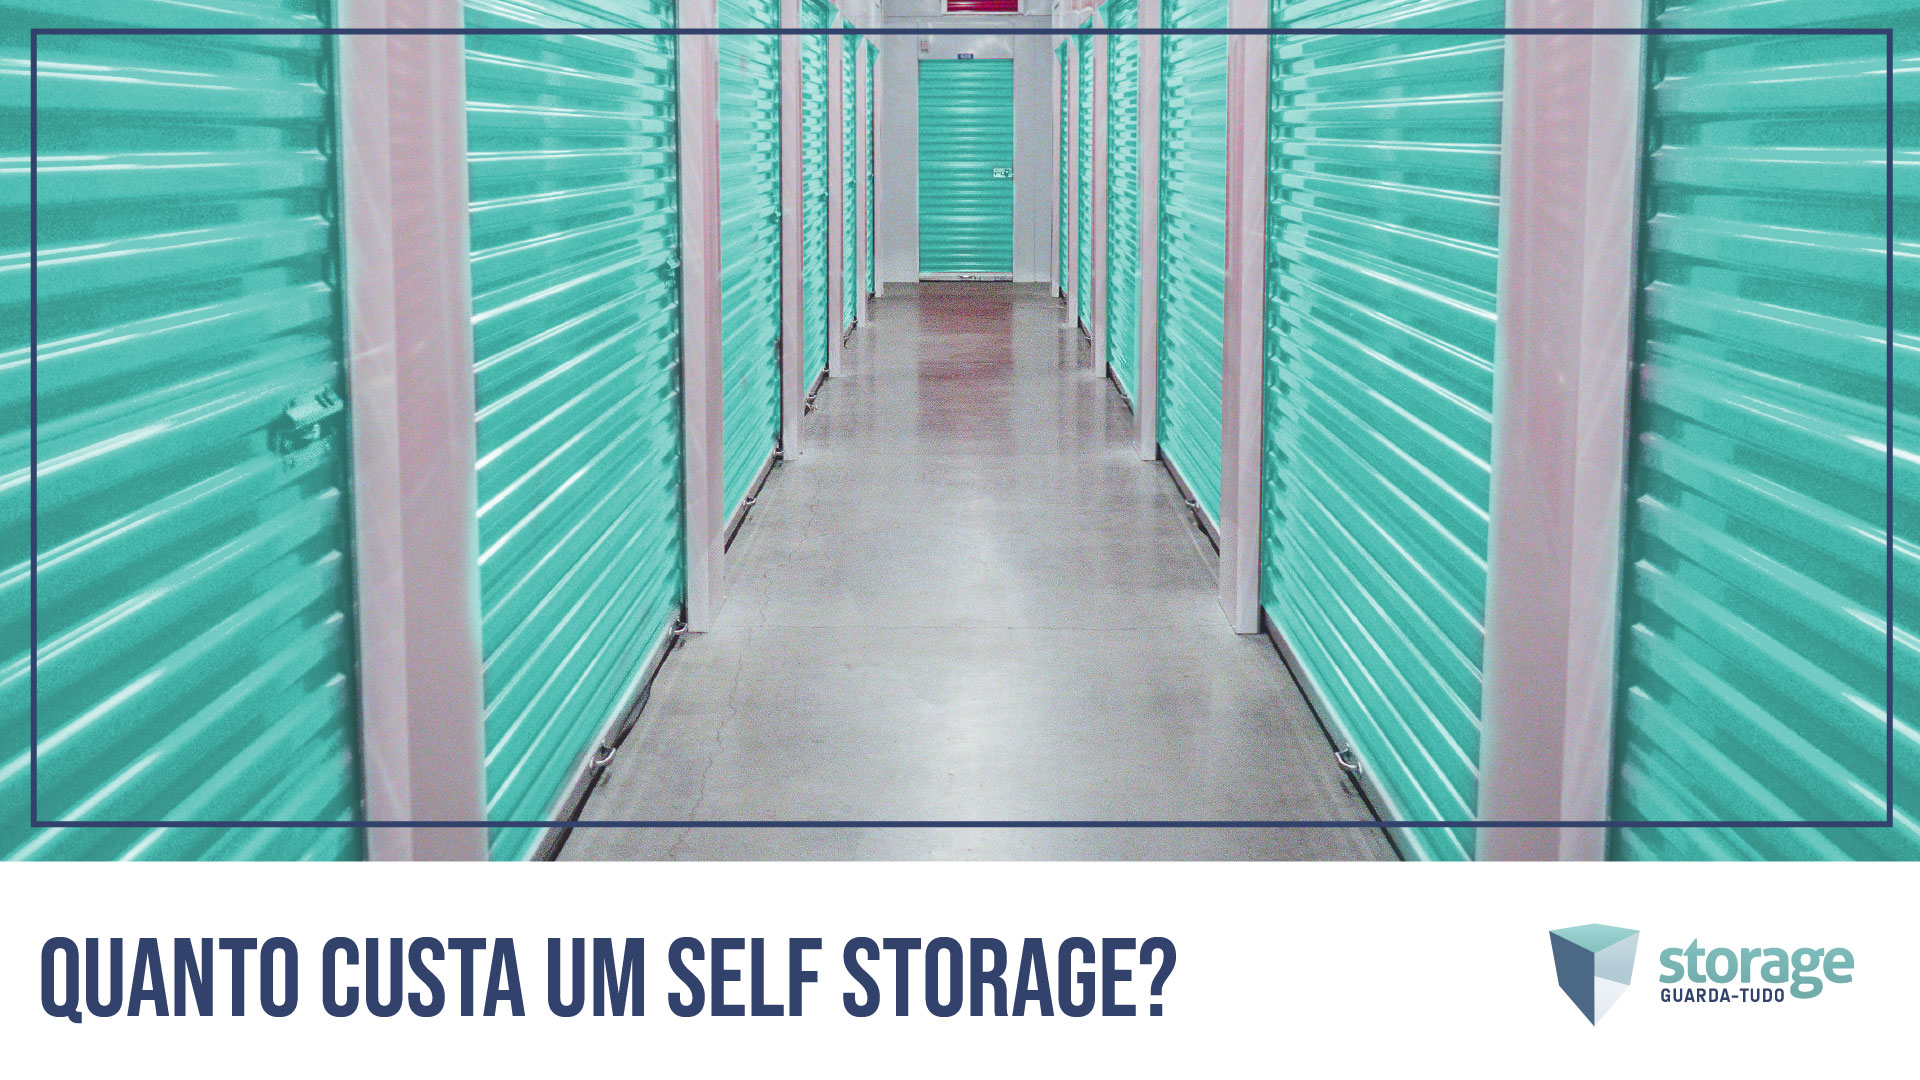 Quanto custa um self storage?